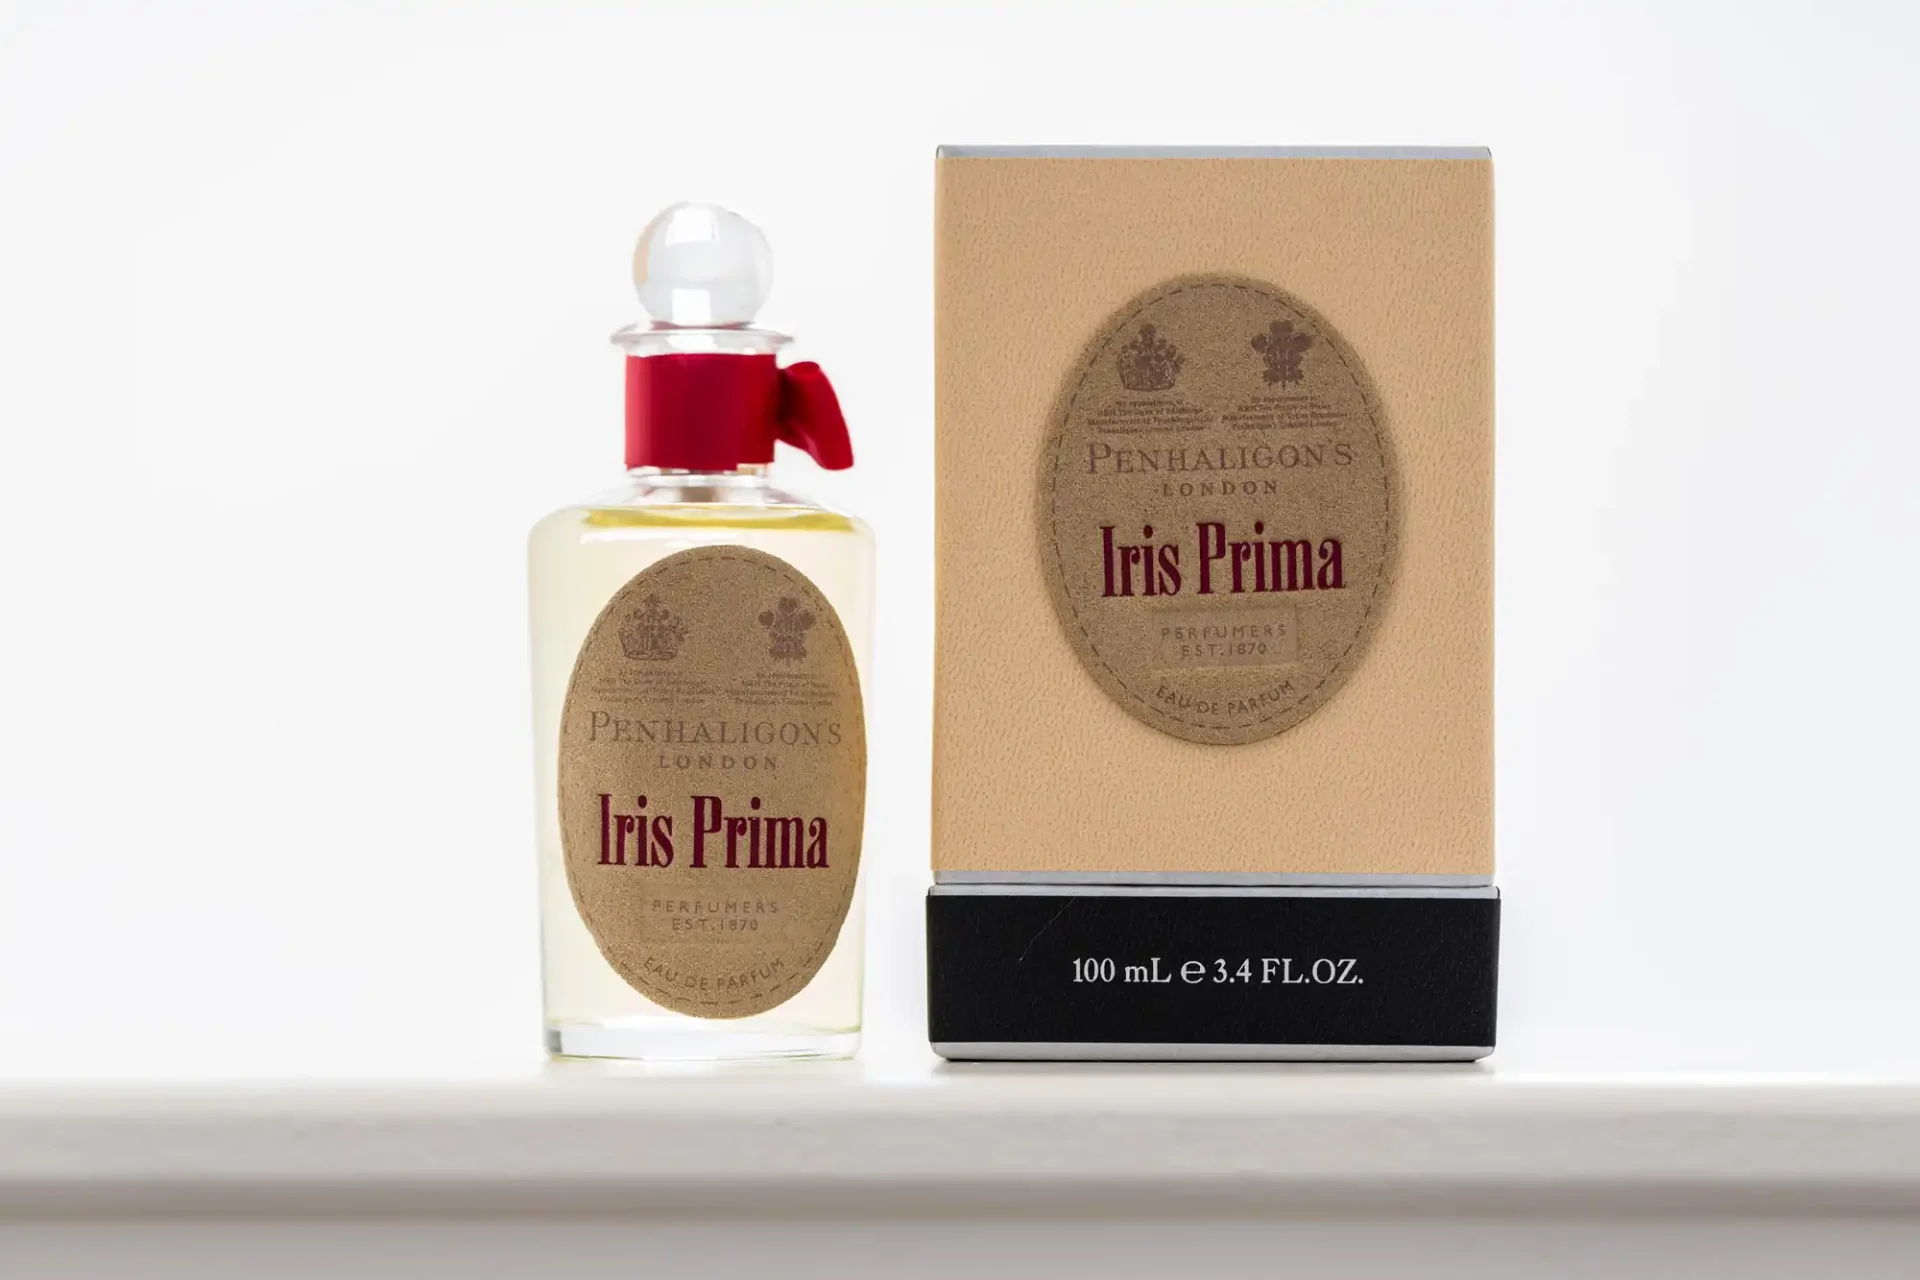 Penhaligon's iris prima perfume bottle next to its box on a white surface.